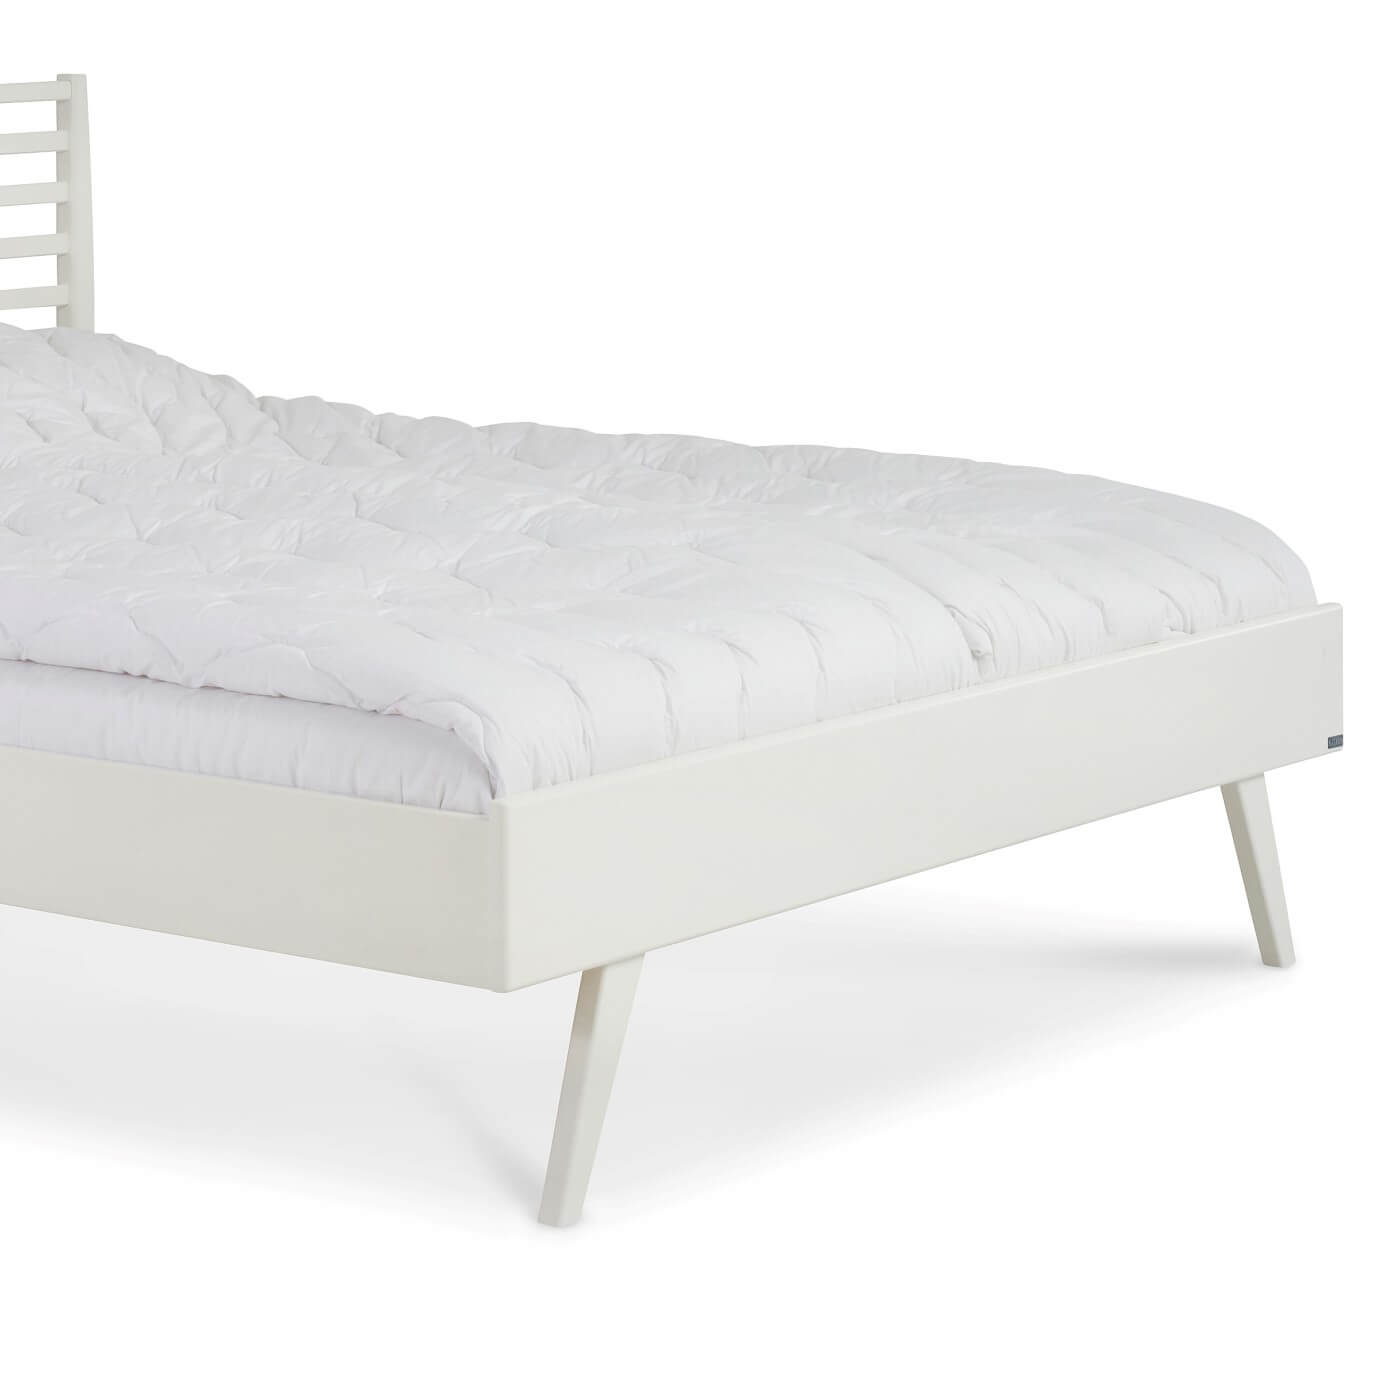 Łóżko drewniane białe 160x200 NOTTE. Fragment z widokiem na wysokie białe skośne nóżki z drewna łóżka do sypialni 160x200. Skandynawski design